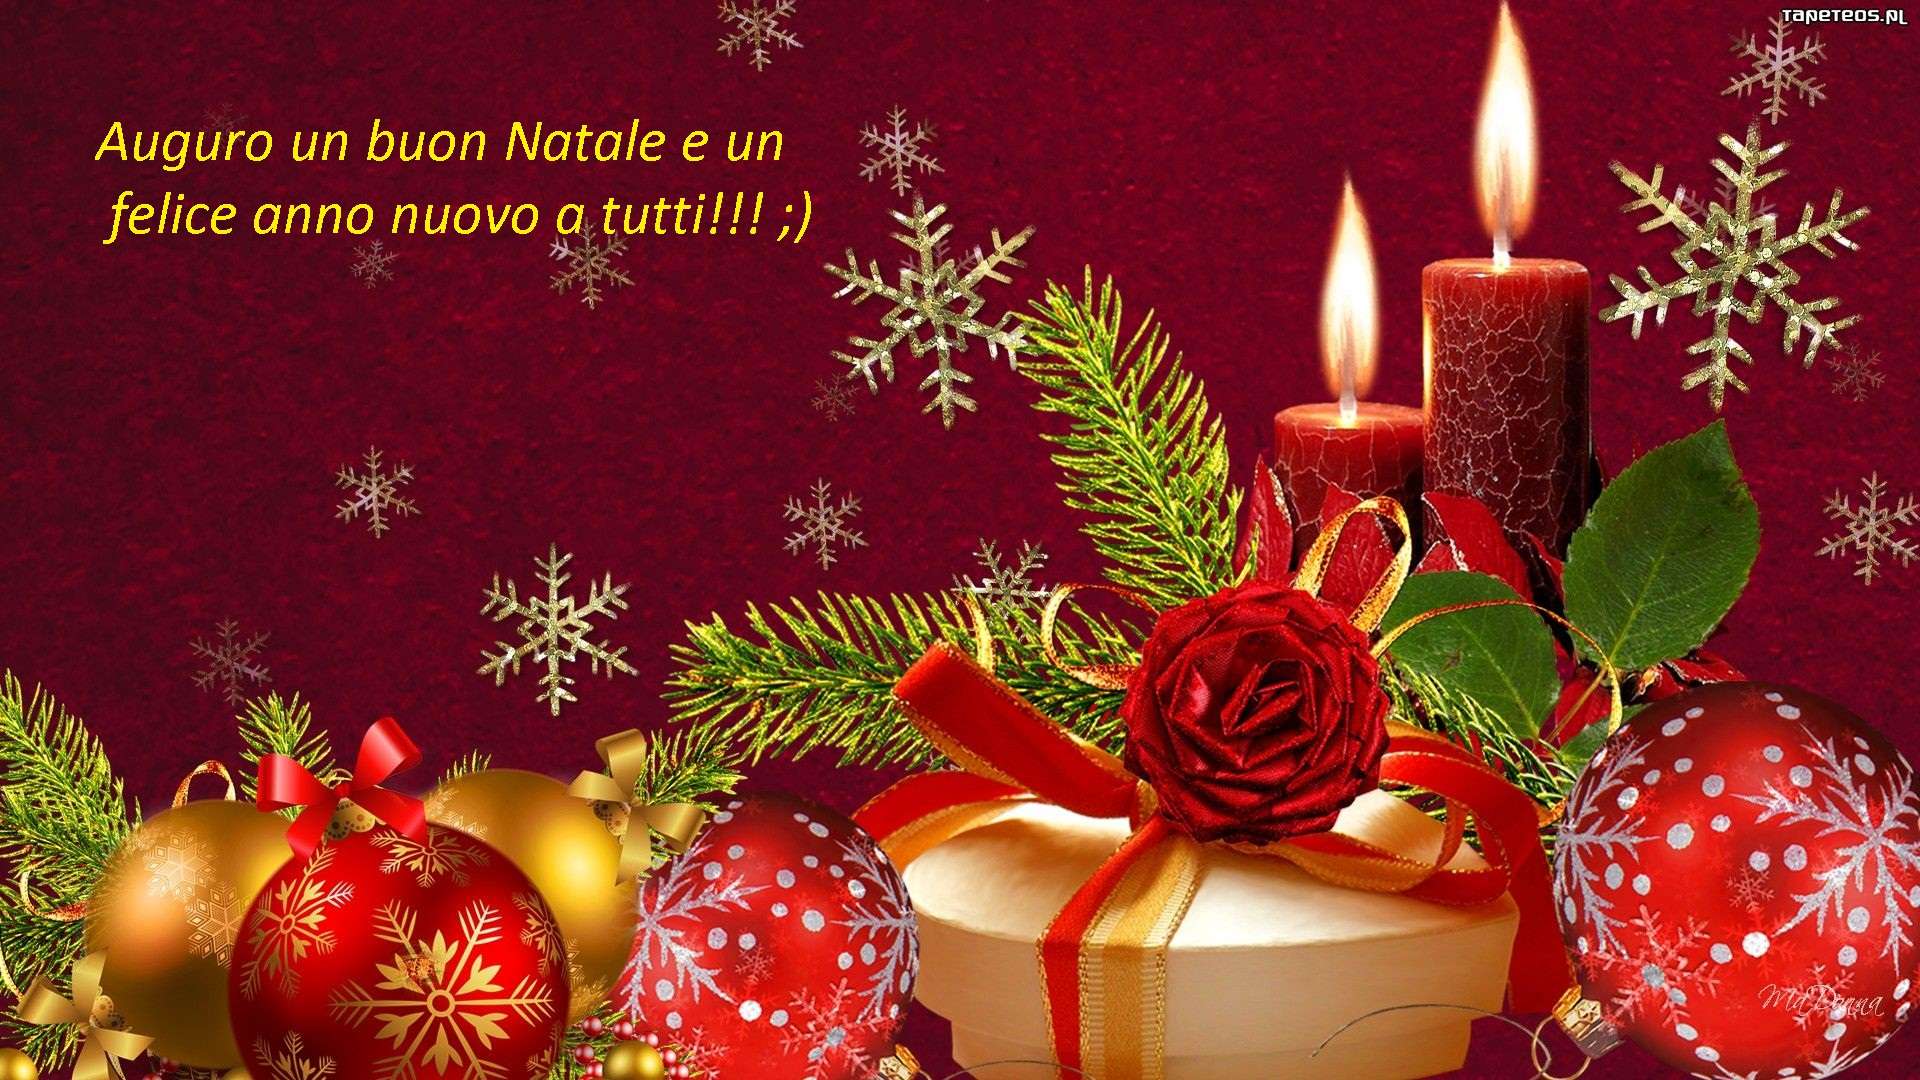 Buon Natale E Auguri.Auguri Di Buon Natale E Felice Anno Nuovo Baronerosso It Forum Modellismo